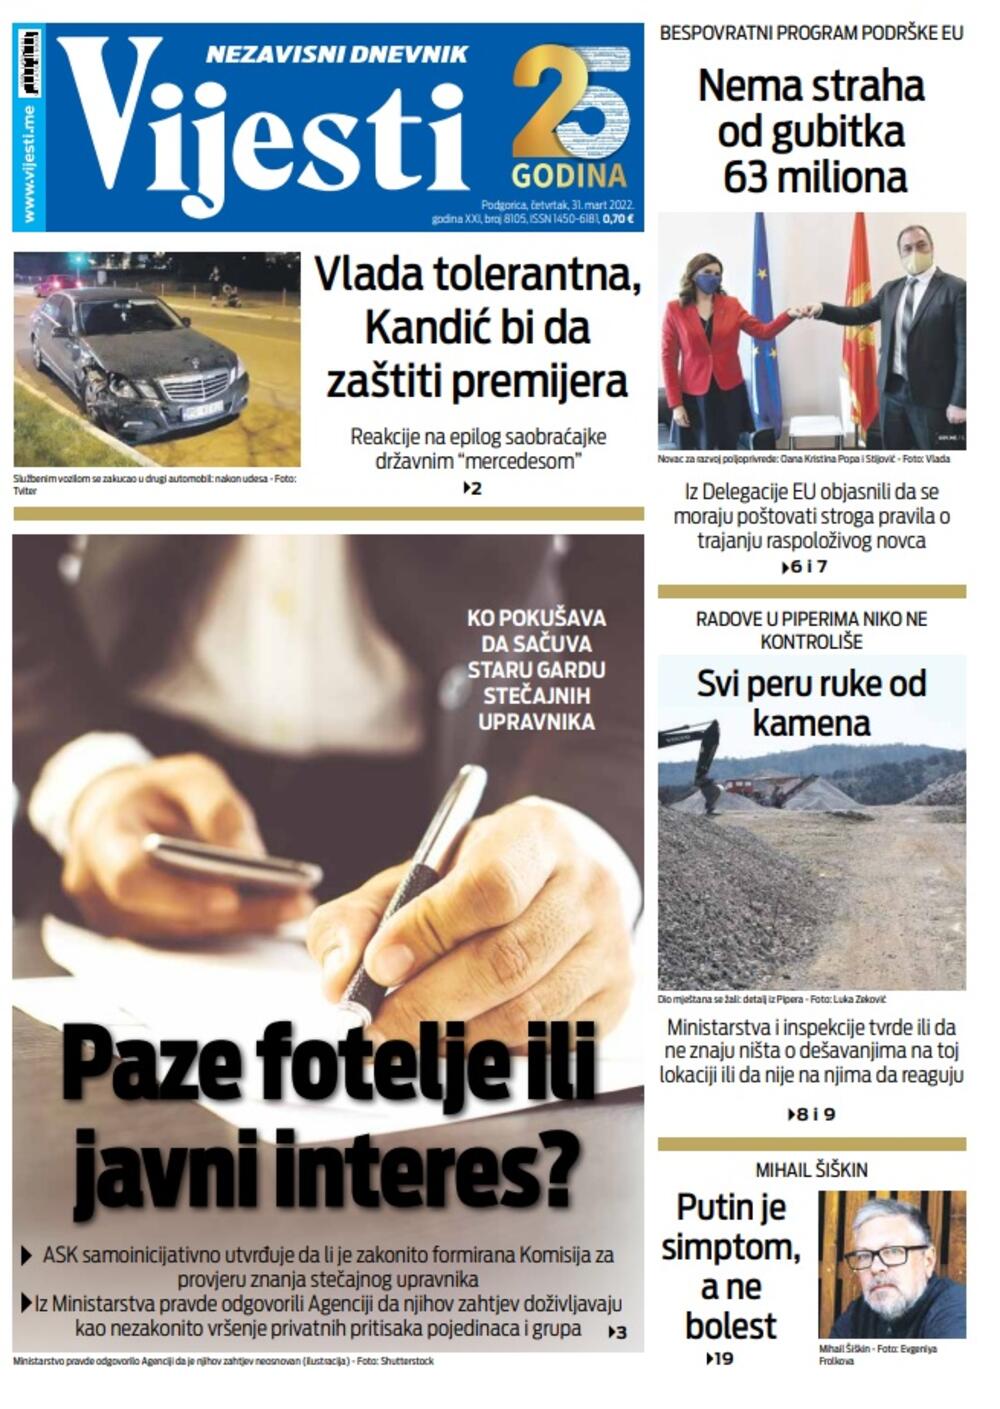 Naslovna strana "Vijesti" za 31. mart 2022., Foto: Vijesti